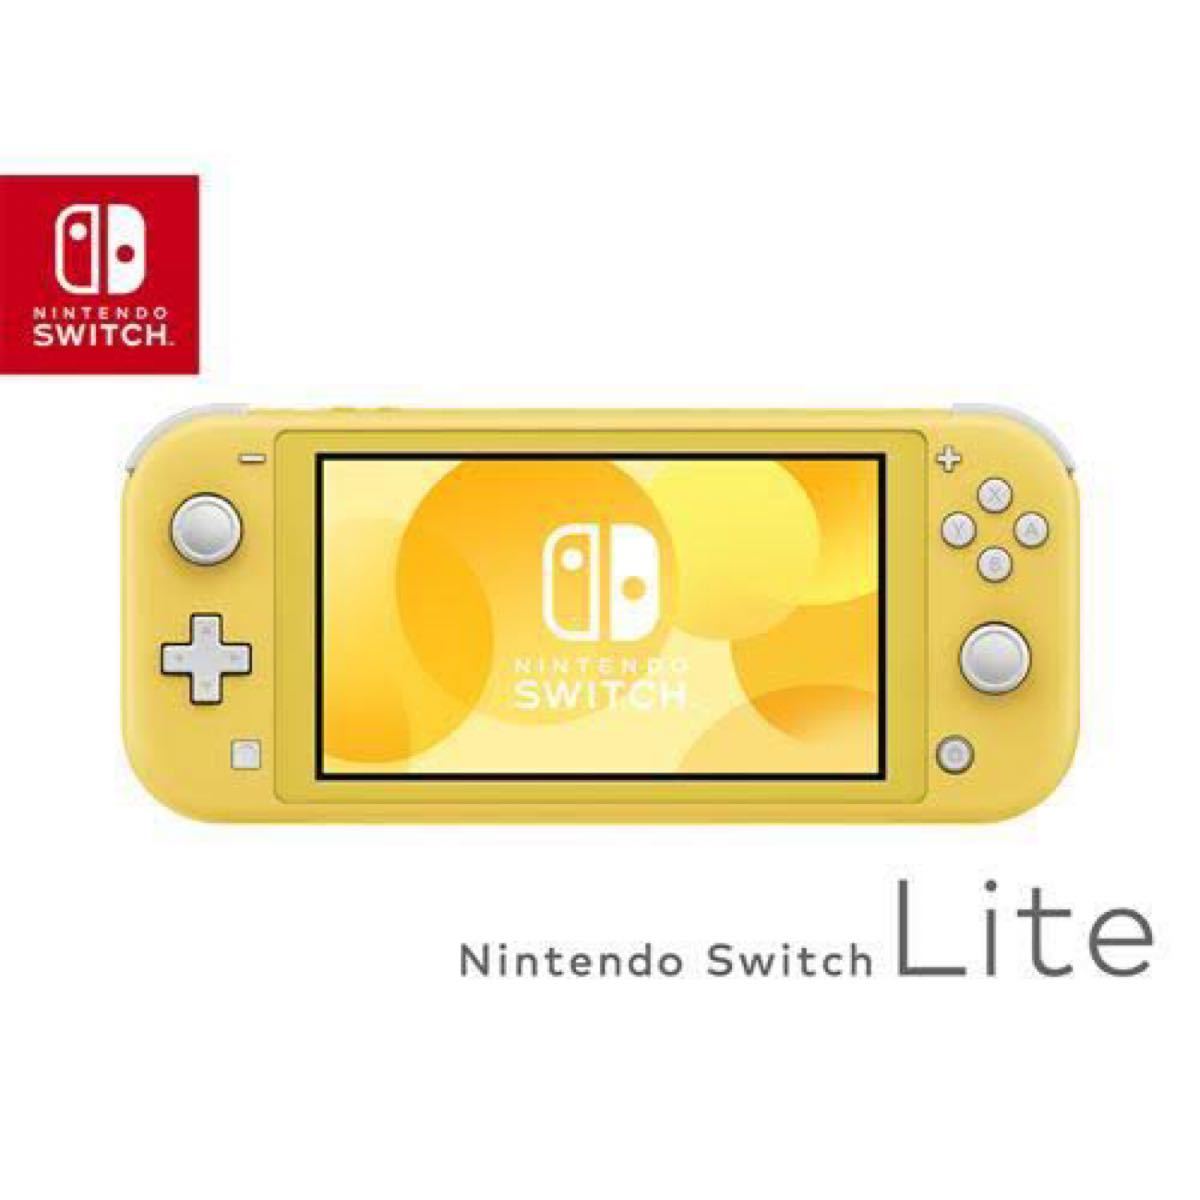 世界的に有名な 新品ニンテンドースイッチライト 任天堂スイッチLite Nintendo Switch Lite イエロー - 任天堂